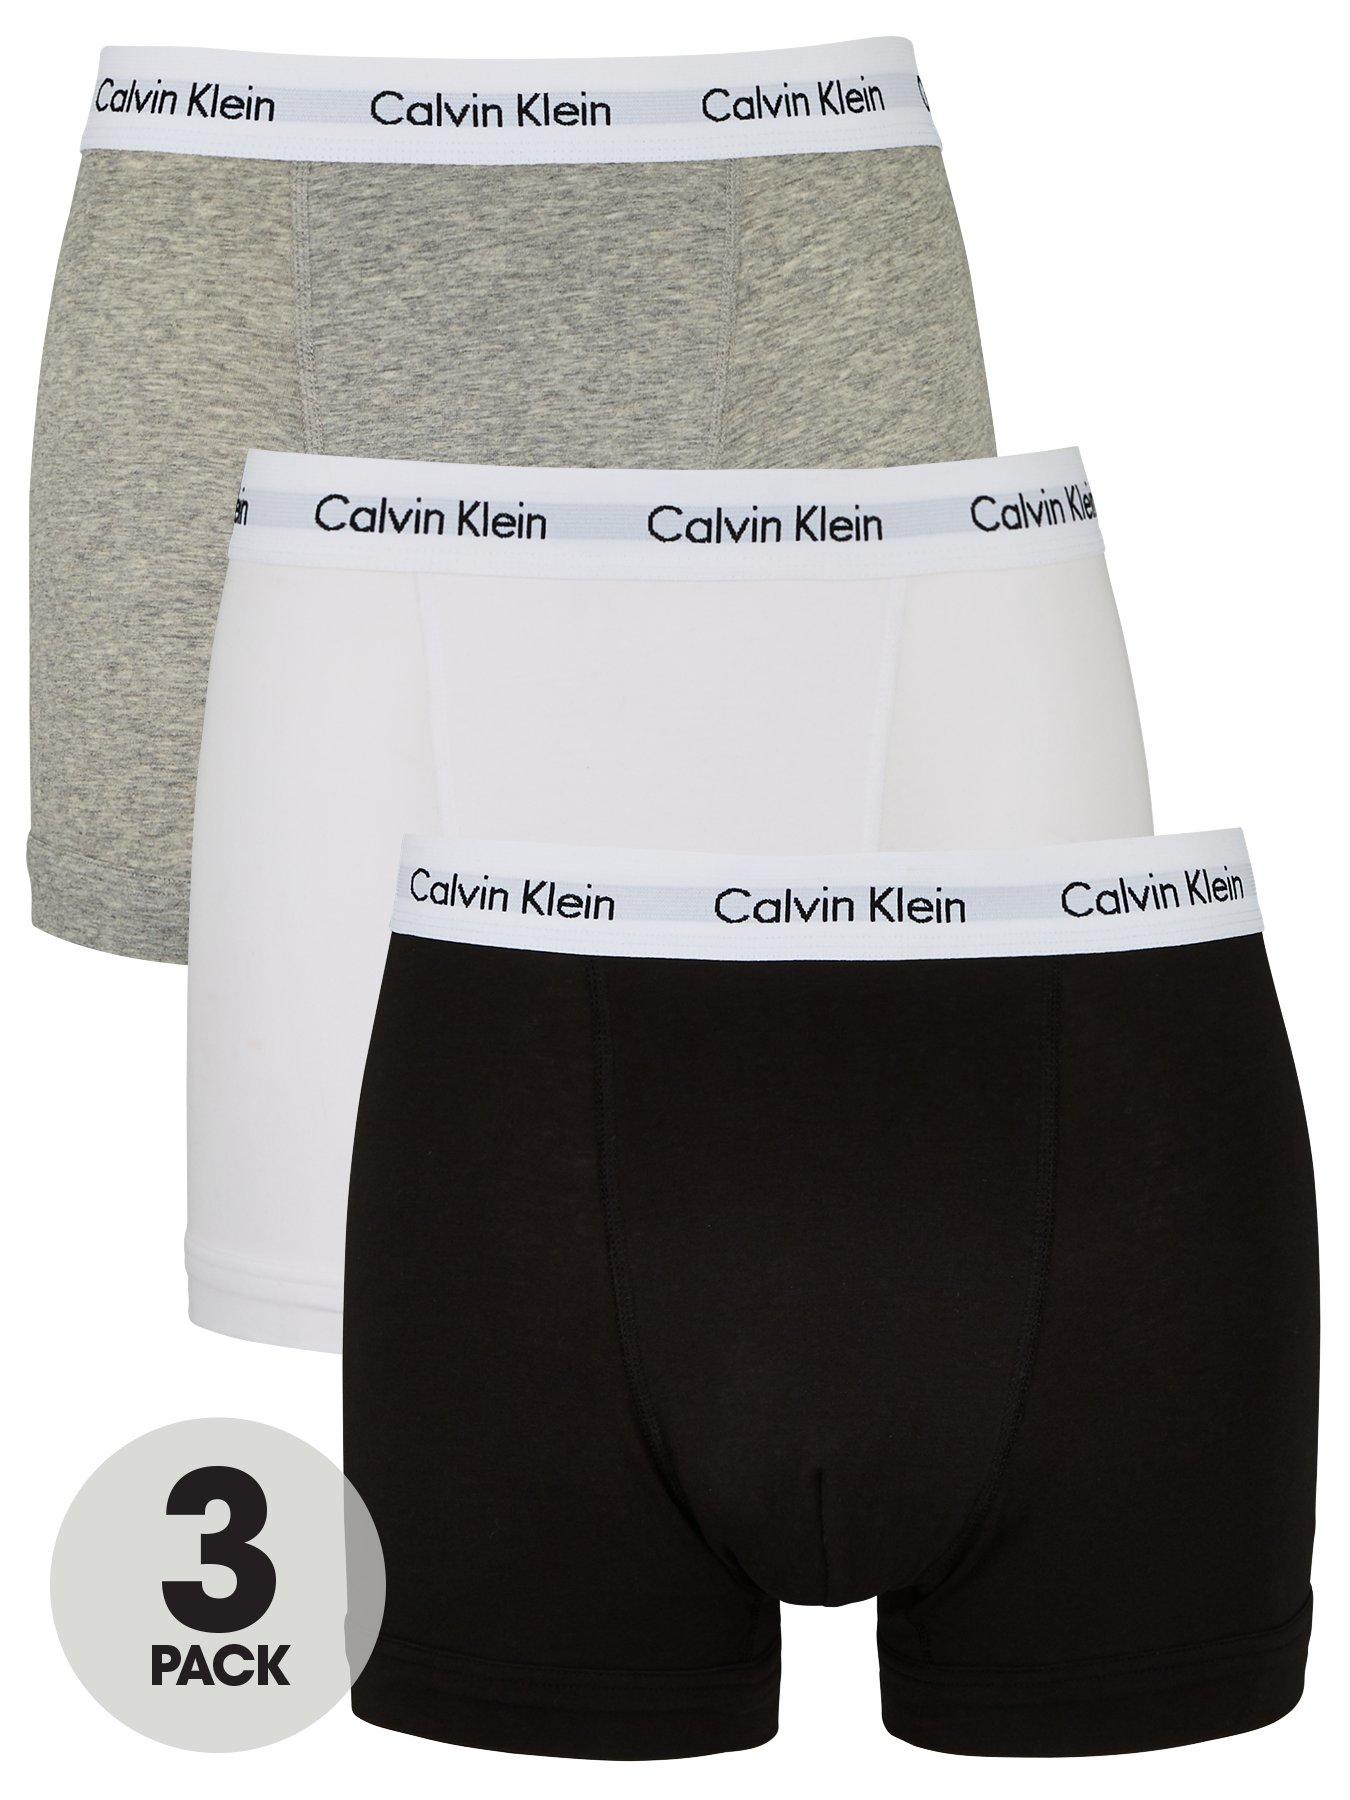 calvin klein boxer briefs 2xl